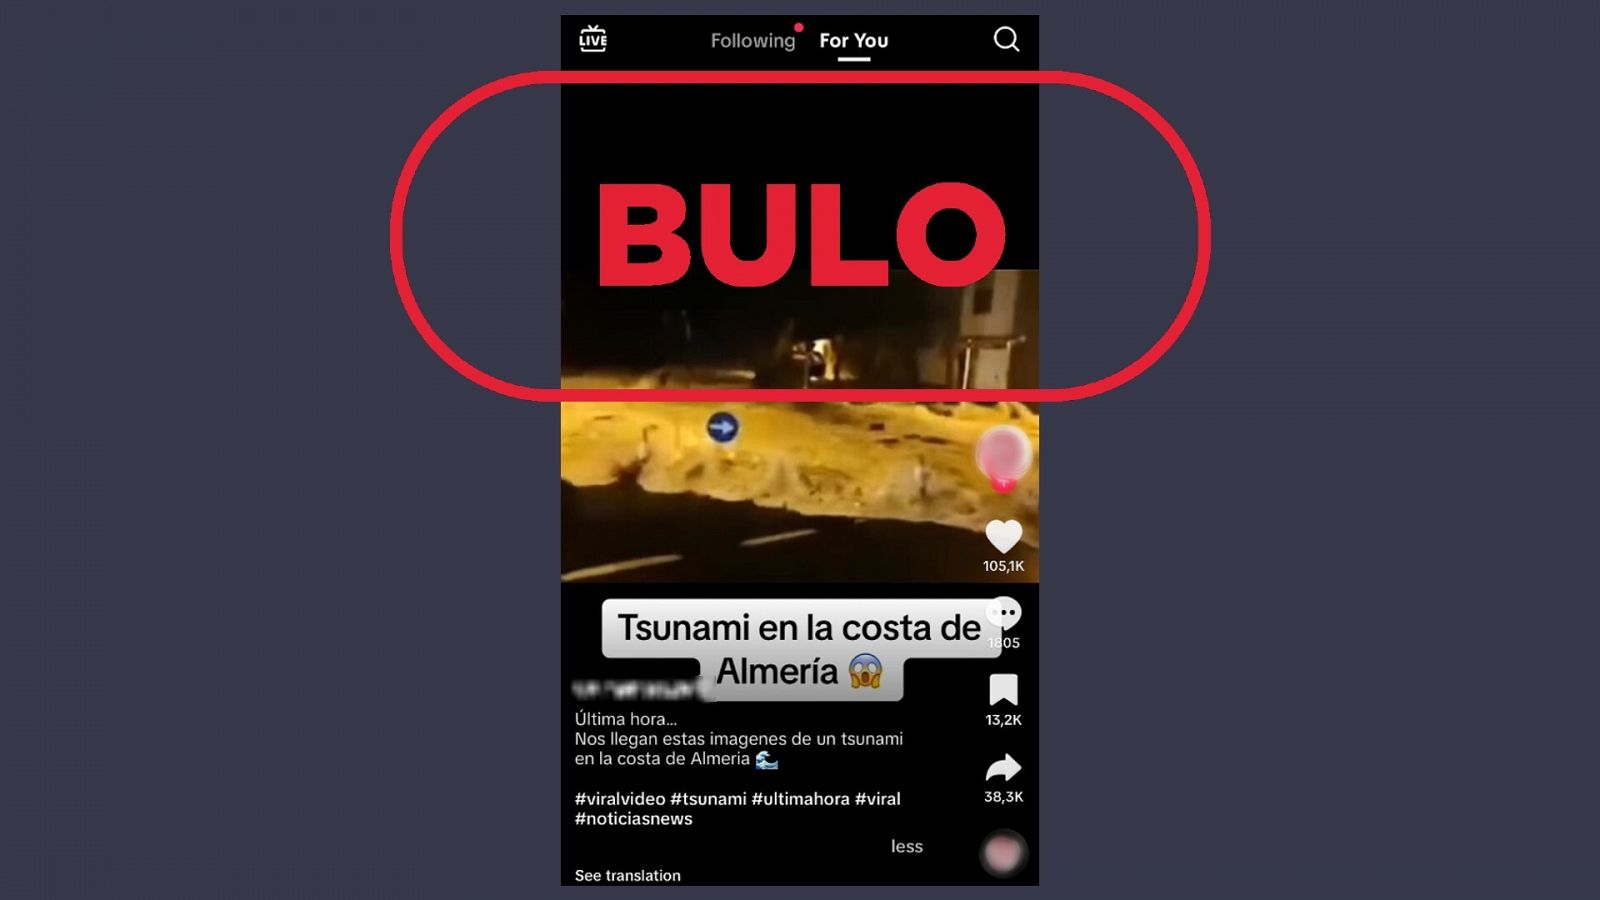 Publicación de TikTok que reproduce el bulo que asegura que este vídeo muestra un tsunami reciente en Almería, con el sello Bulo en rojo